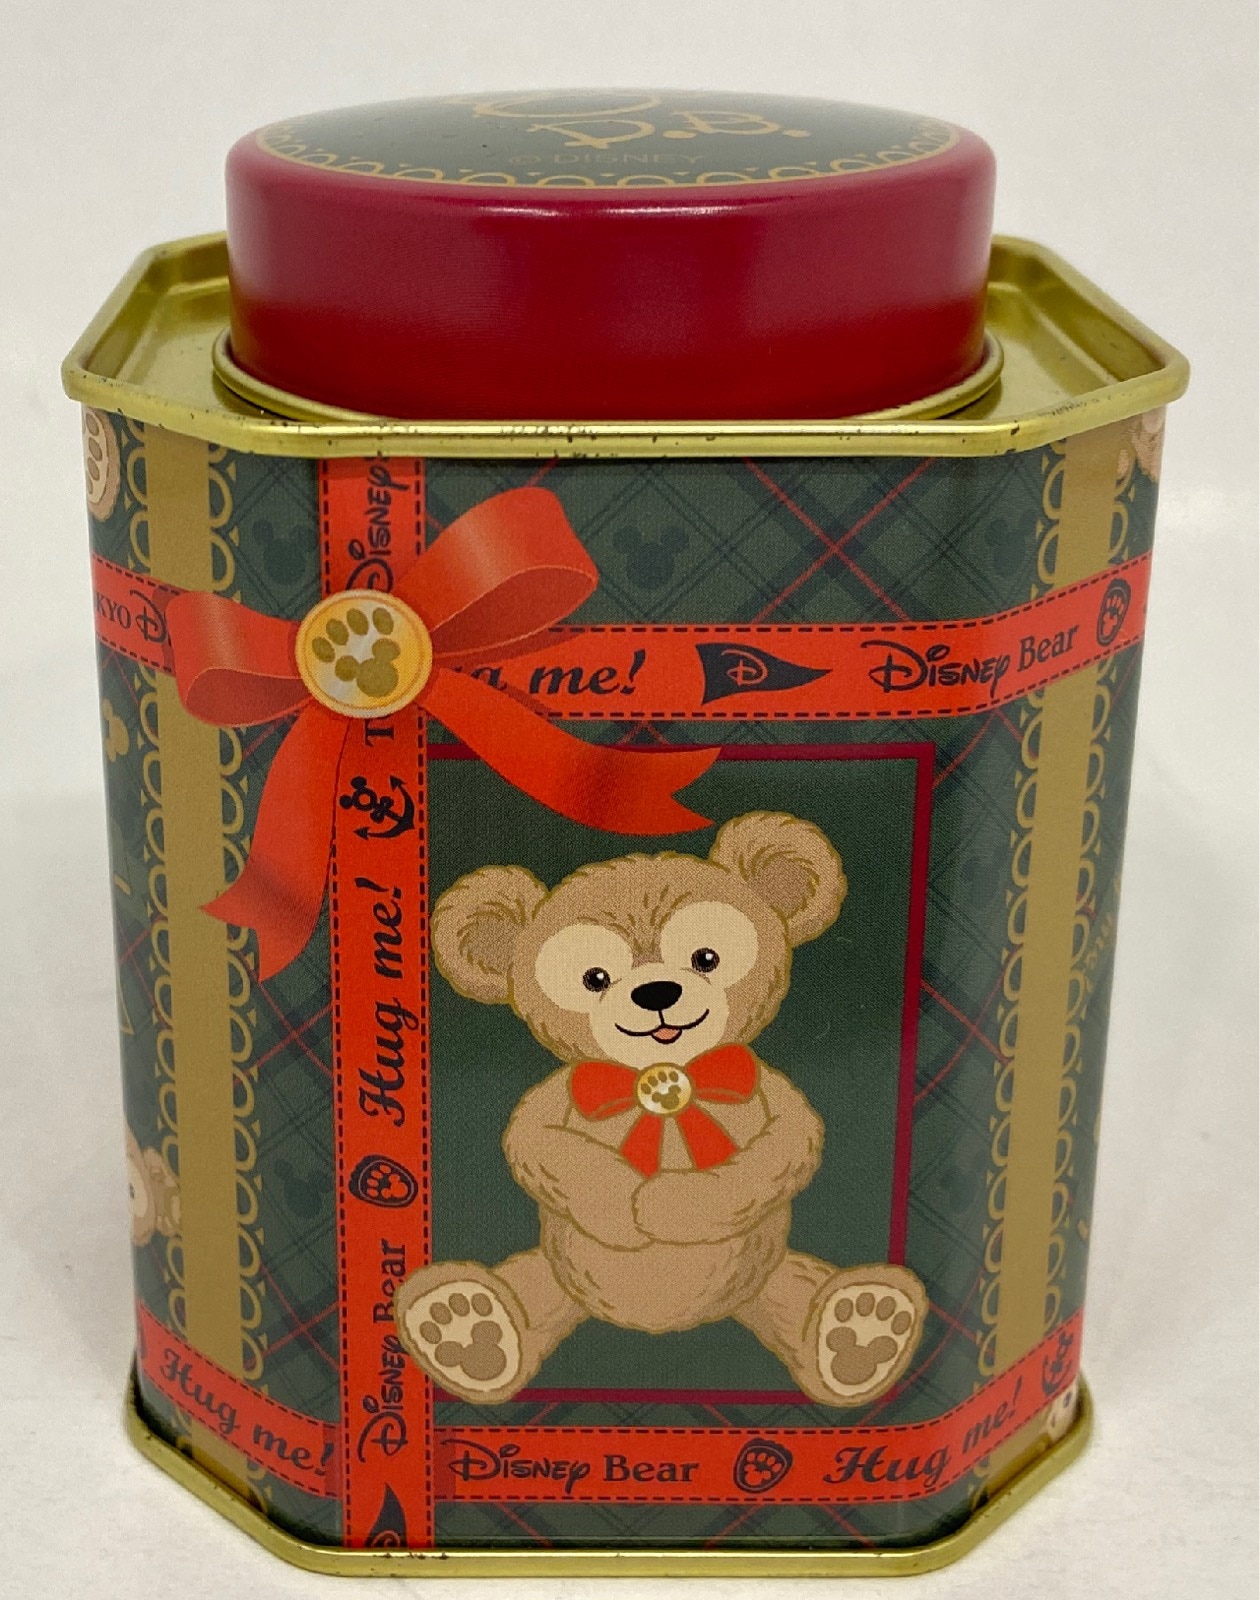 東京ディズニーシー 紅茶缶 ダッフィー Disneybear 初期 初期 まんだらけ Mandarake